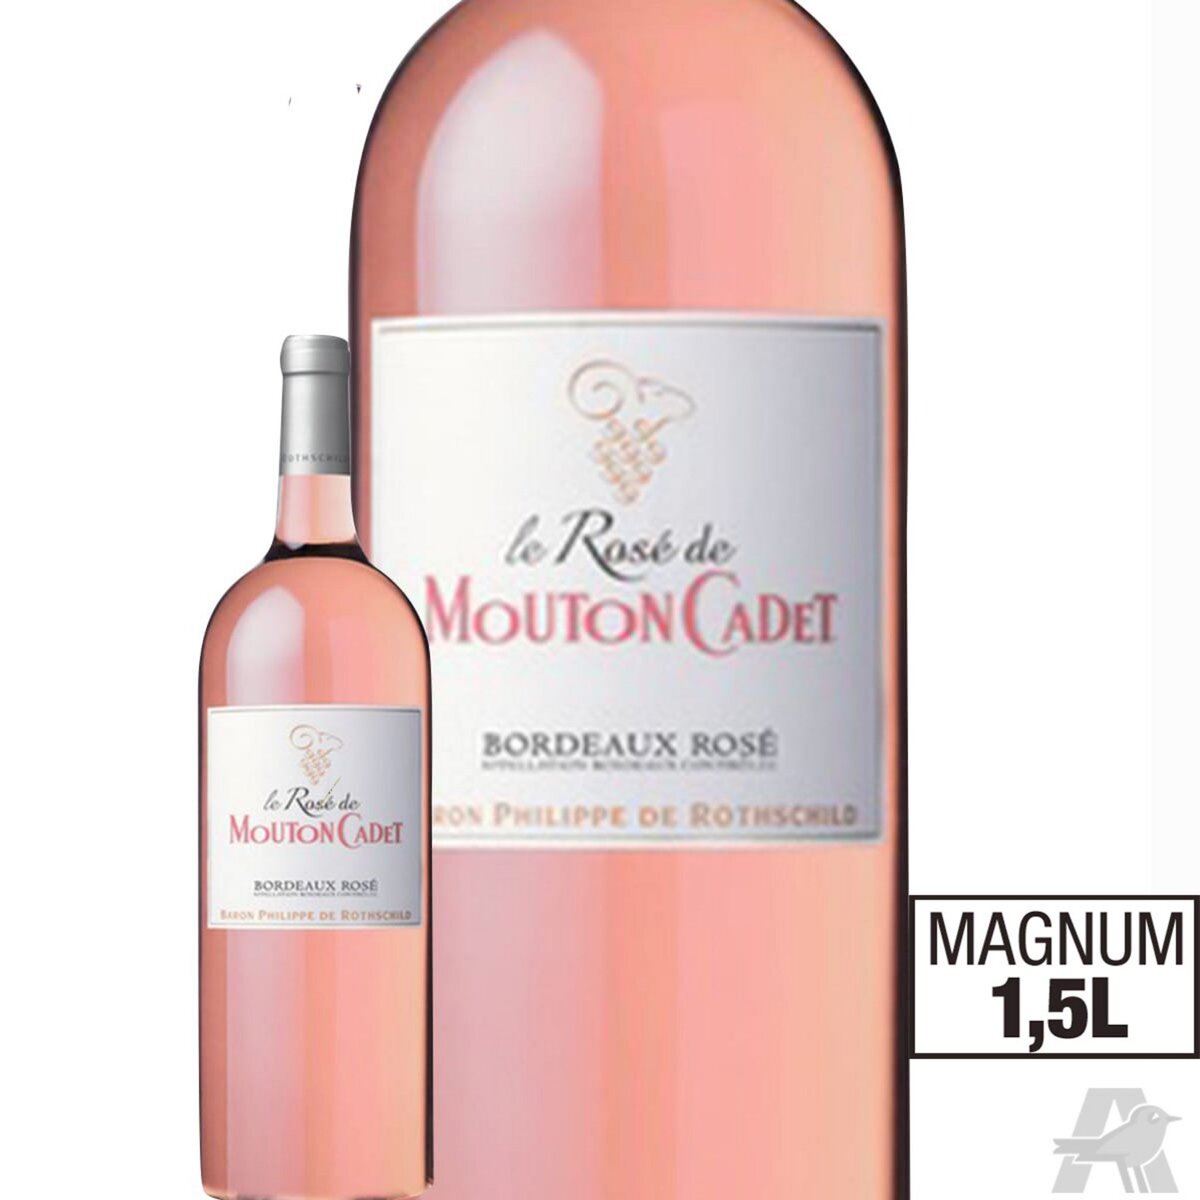 Magnum Mouton Cadet Bordeaux Rosé 2015